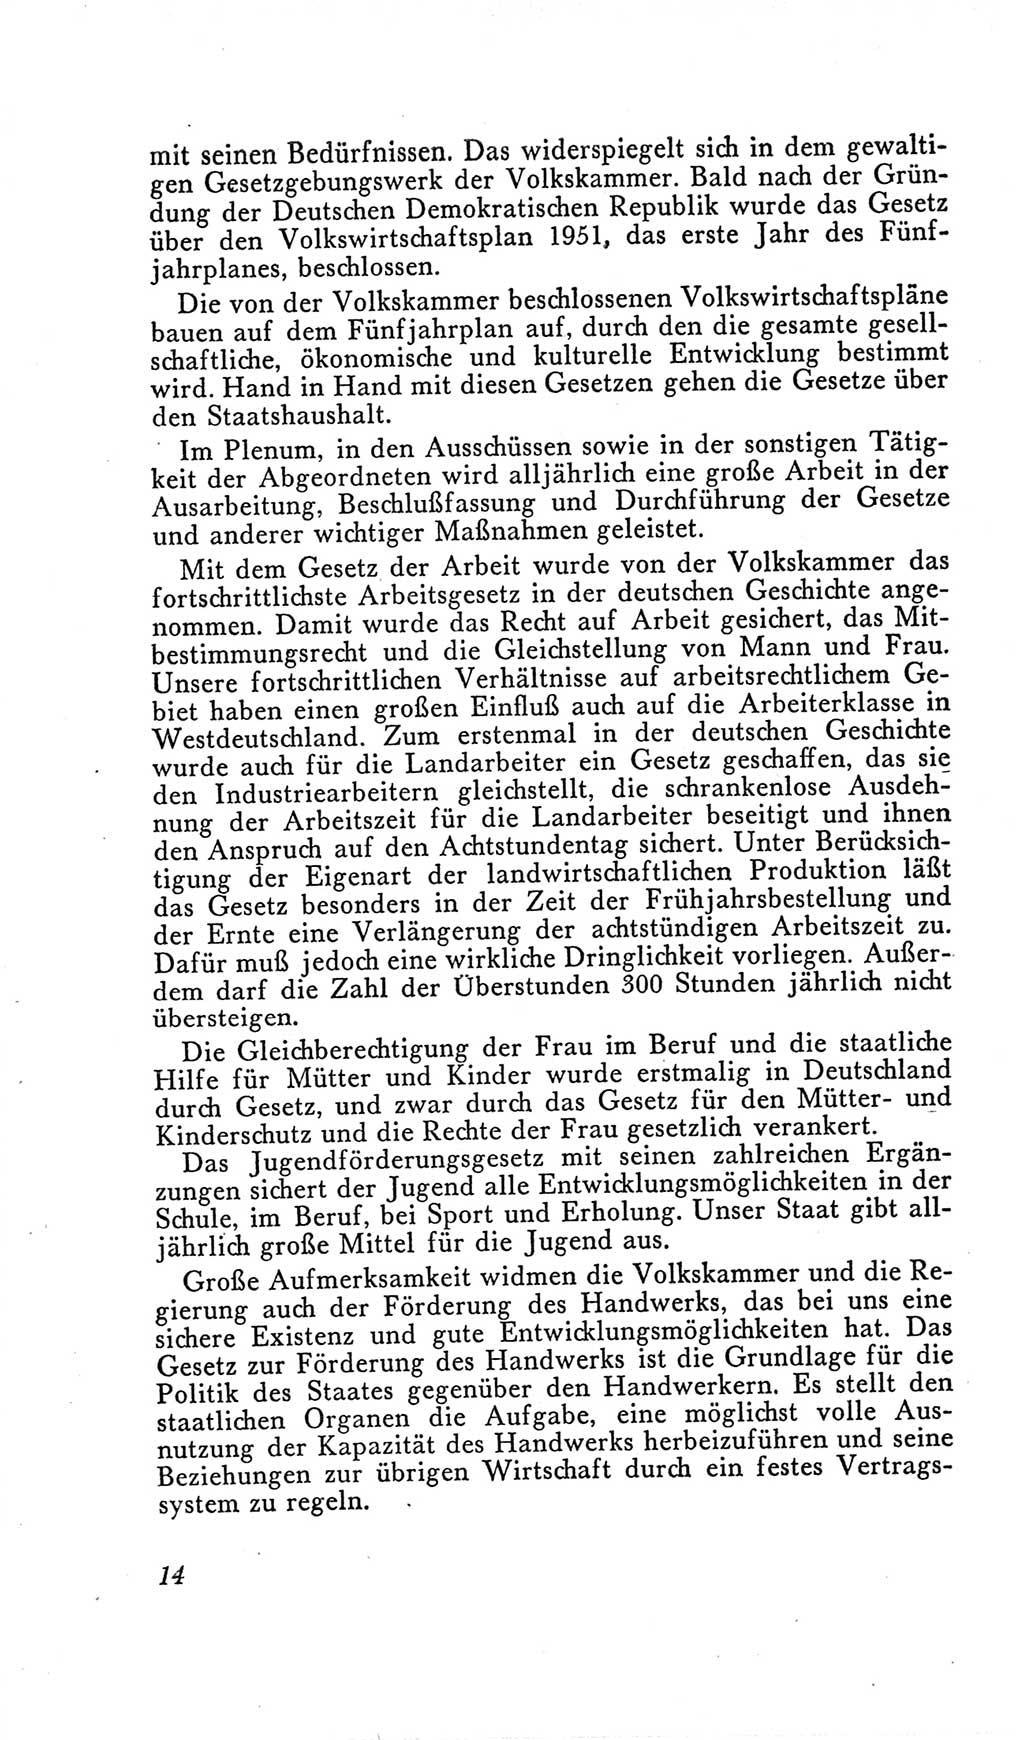 Handbuch der Volkskammer (VK) der Deutschen Demokratischen Republik (DDR), 2. Wahlperiode 1954-1958, Seite 14 (Hdb. VK. DDR, 2. WP. 1954-1958, S. 14)